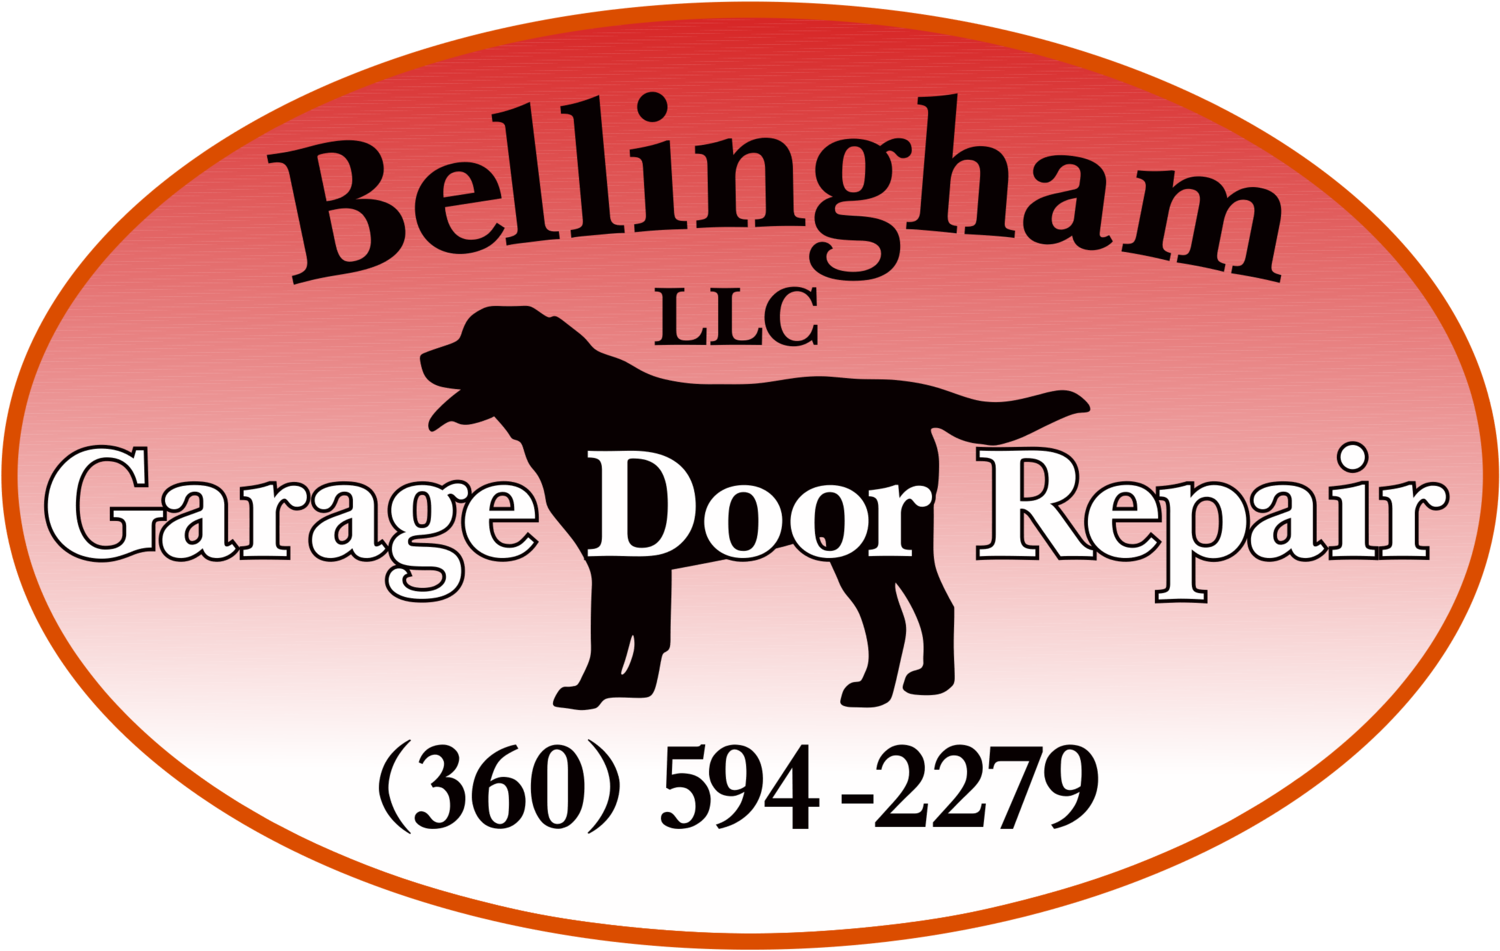 Bellingham Garage Door Repair LLC